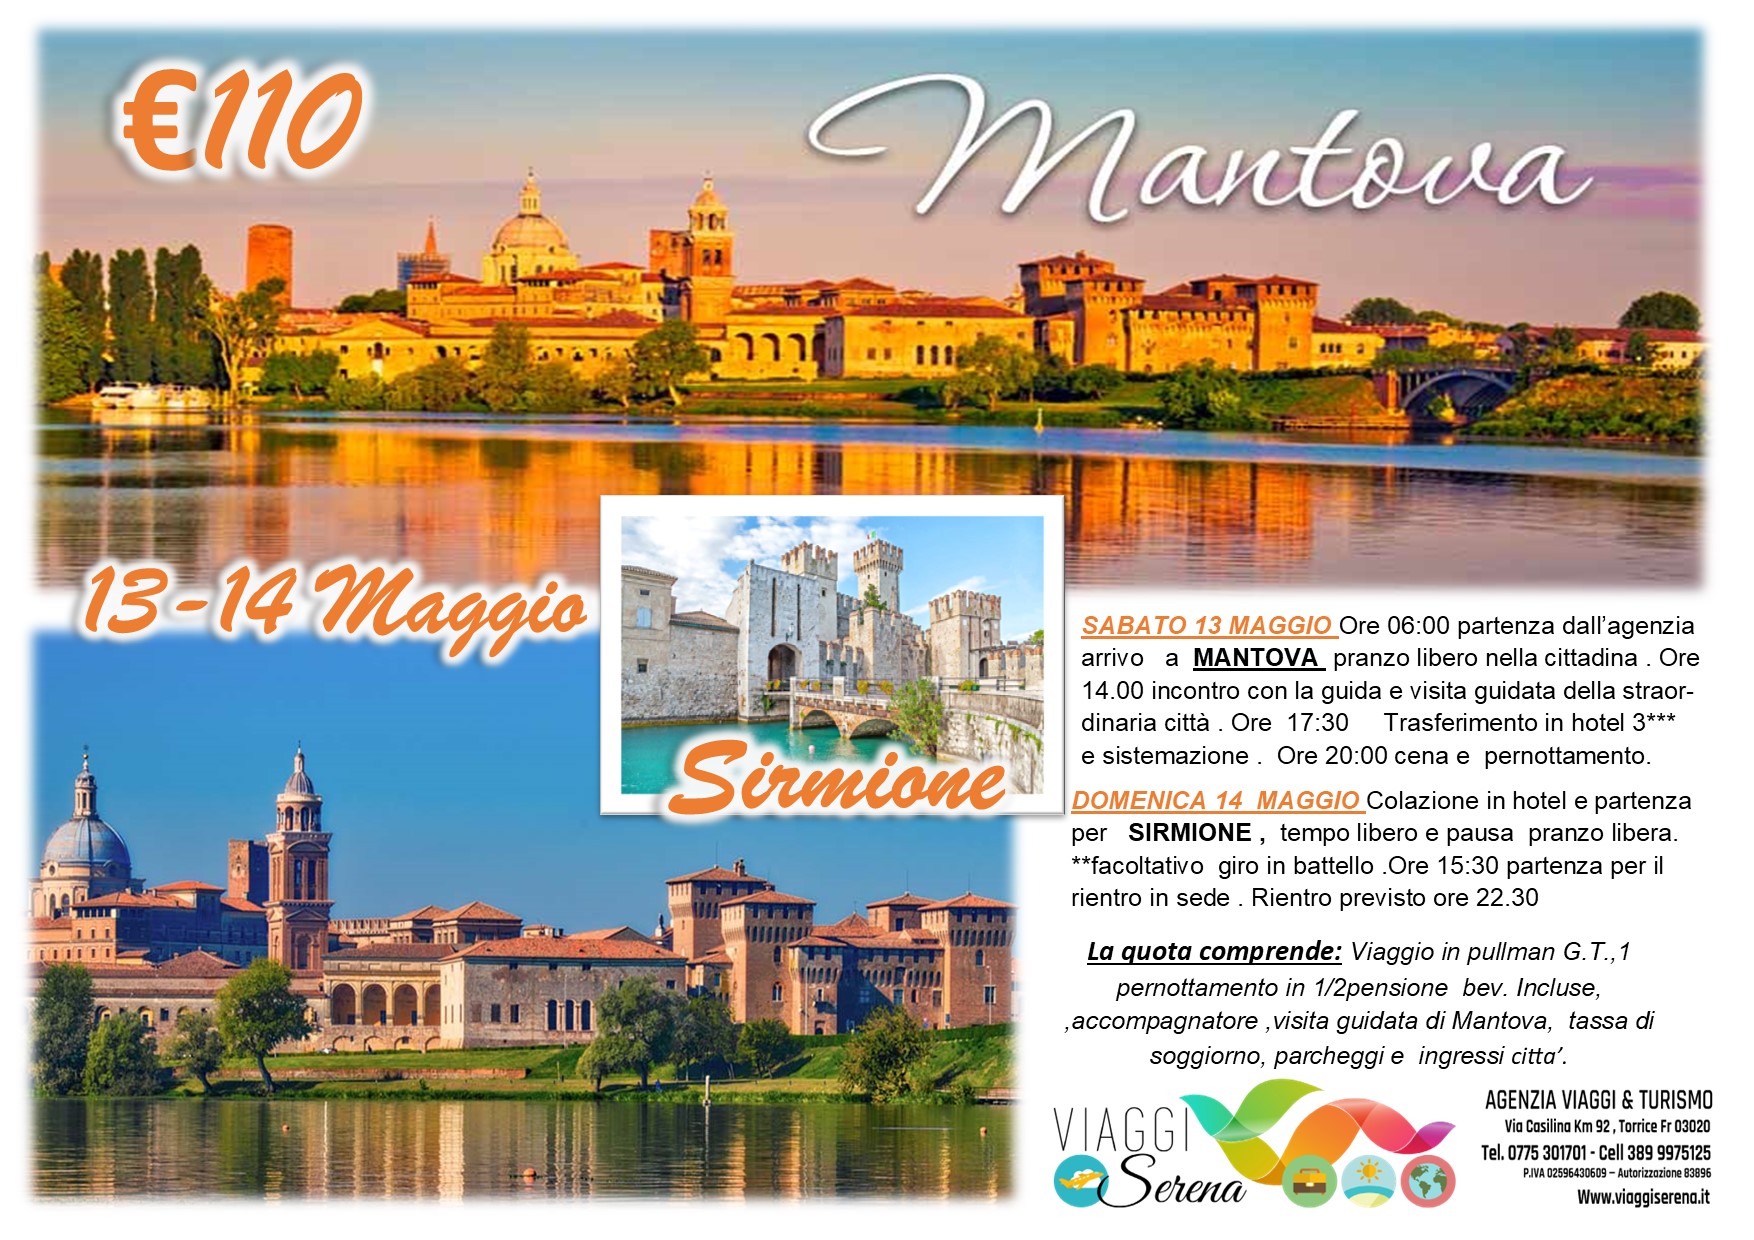 Viaggi di Gruppo: Mantova & Sirmione 13-14 Maggio € 110,00